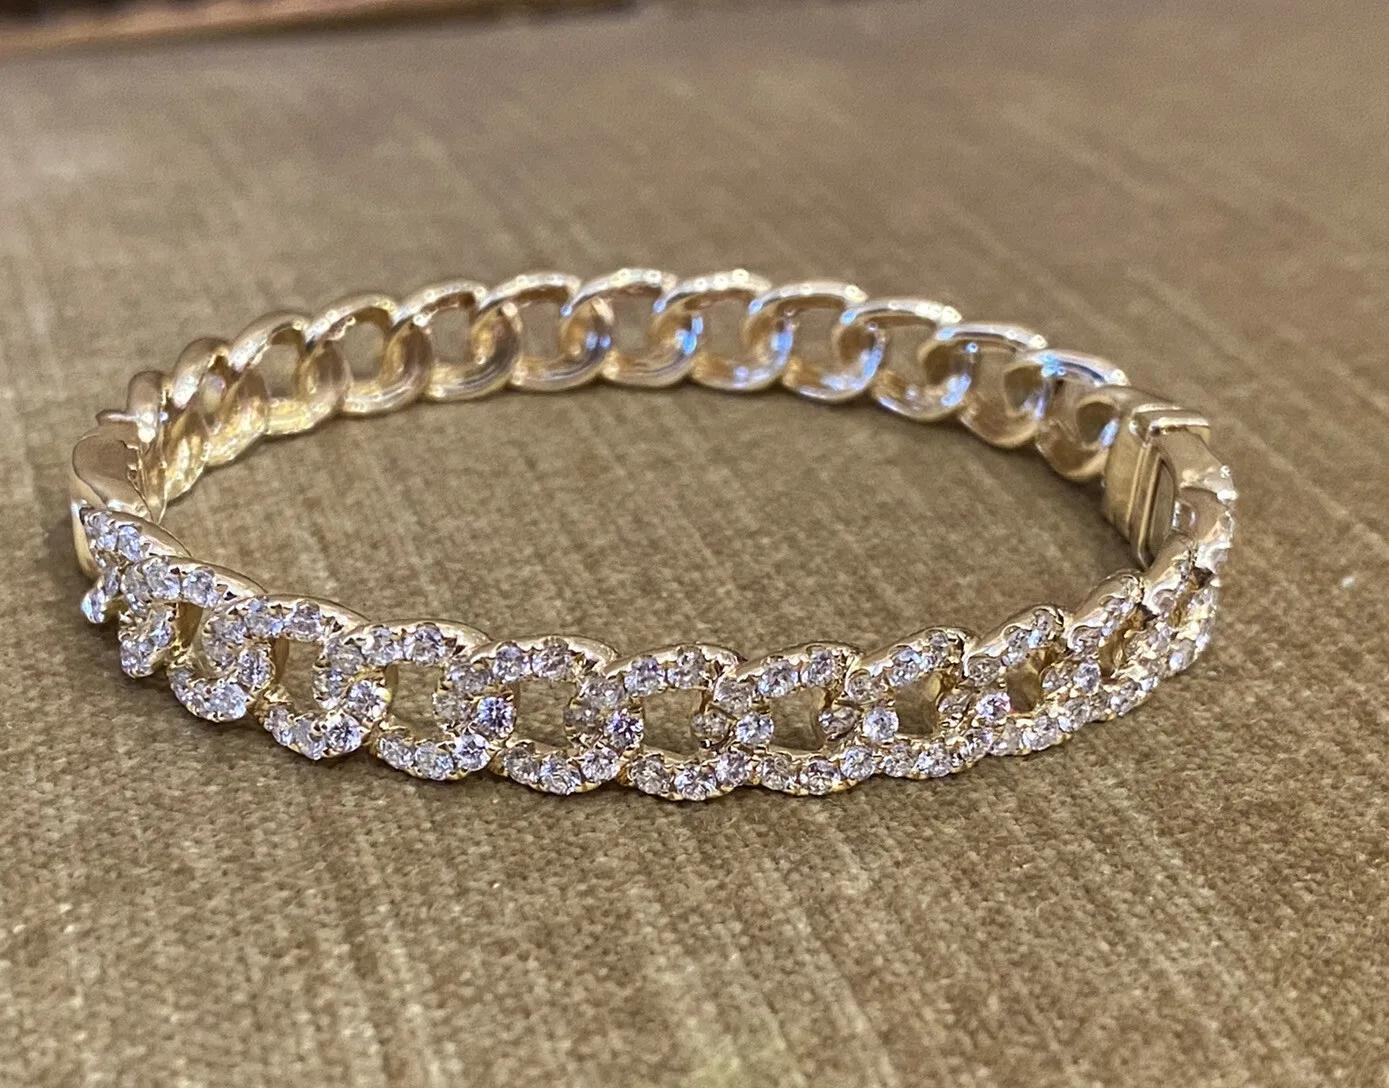 Bracelet à maillons en or jaune 18k et diamants

Le bracelet à maillons en diamant présente 2,79 carats de diamants ronds de taille brillante sertis dans de l'or jaune 18k.

Le poids total des diamants est de 2,79 carats.

Il convient à un poignet